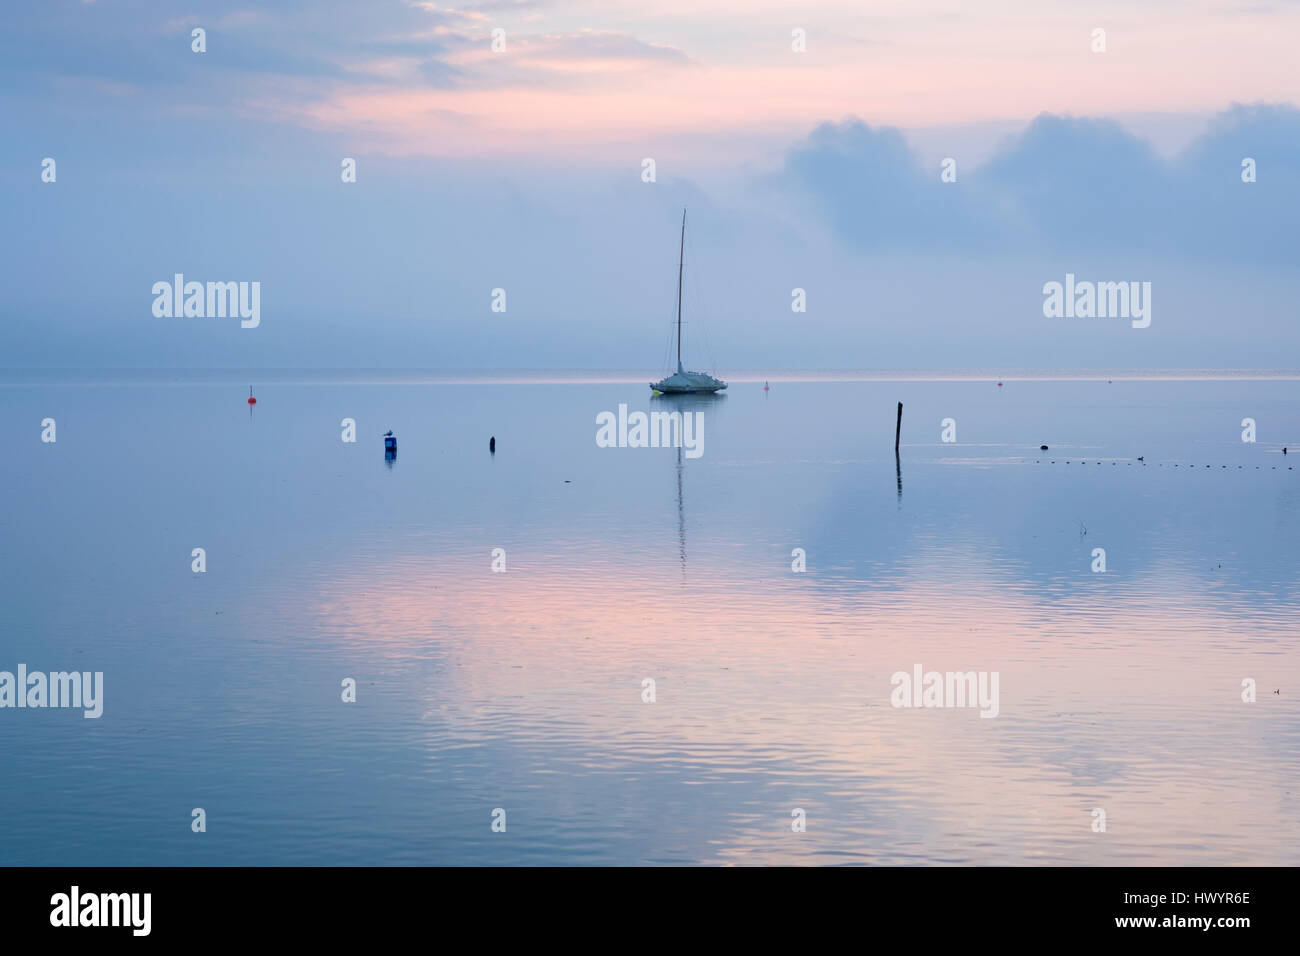 Germany, Bavaria, sailing boat on Lake Starnberg at dawn Stock Photo